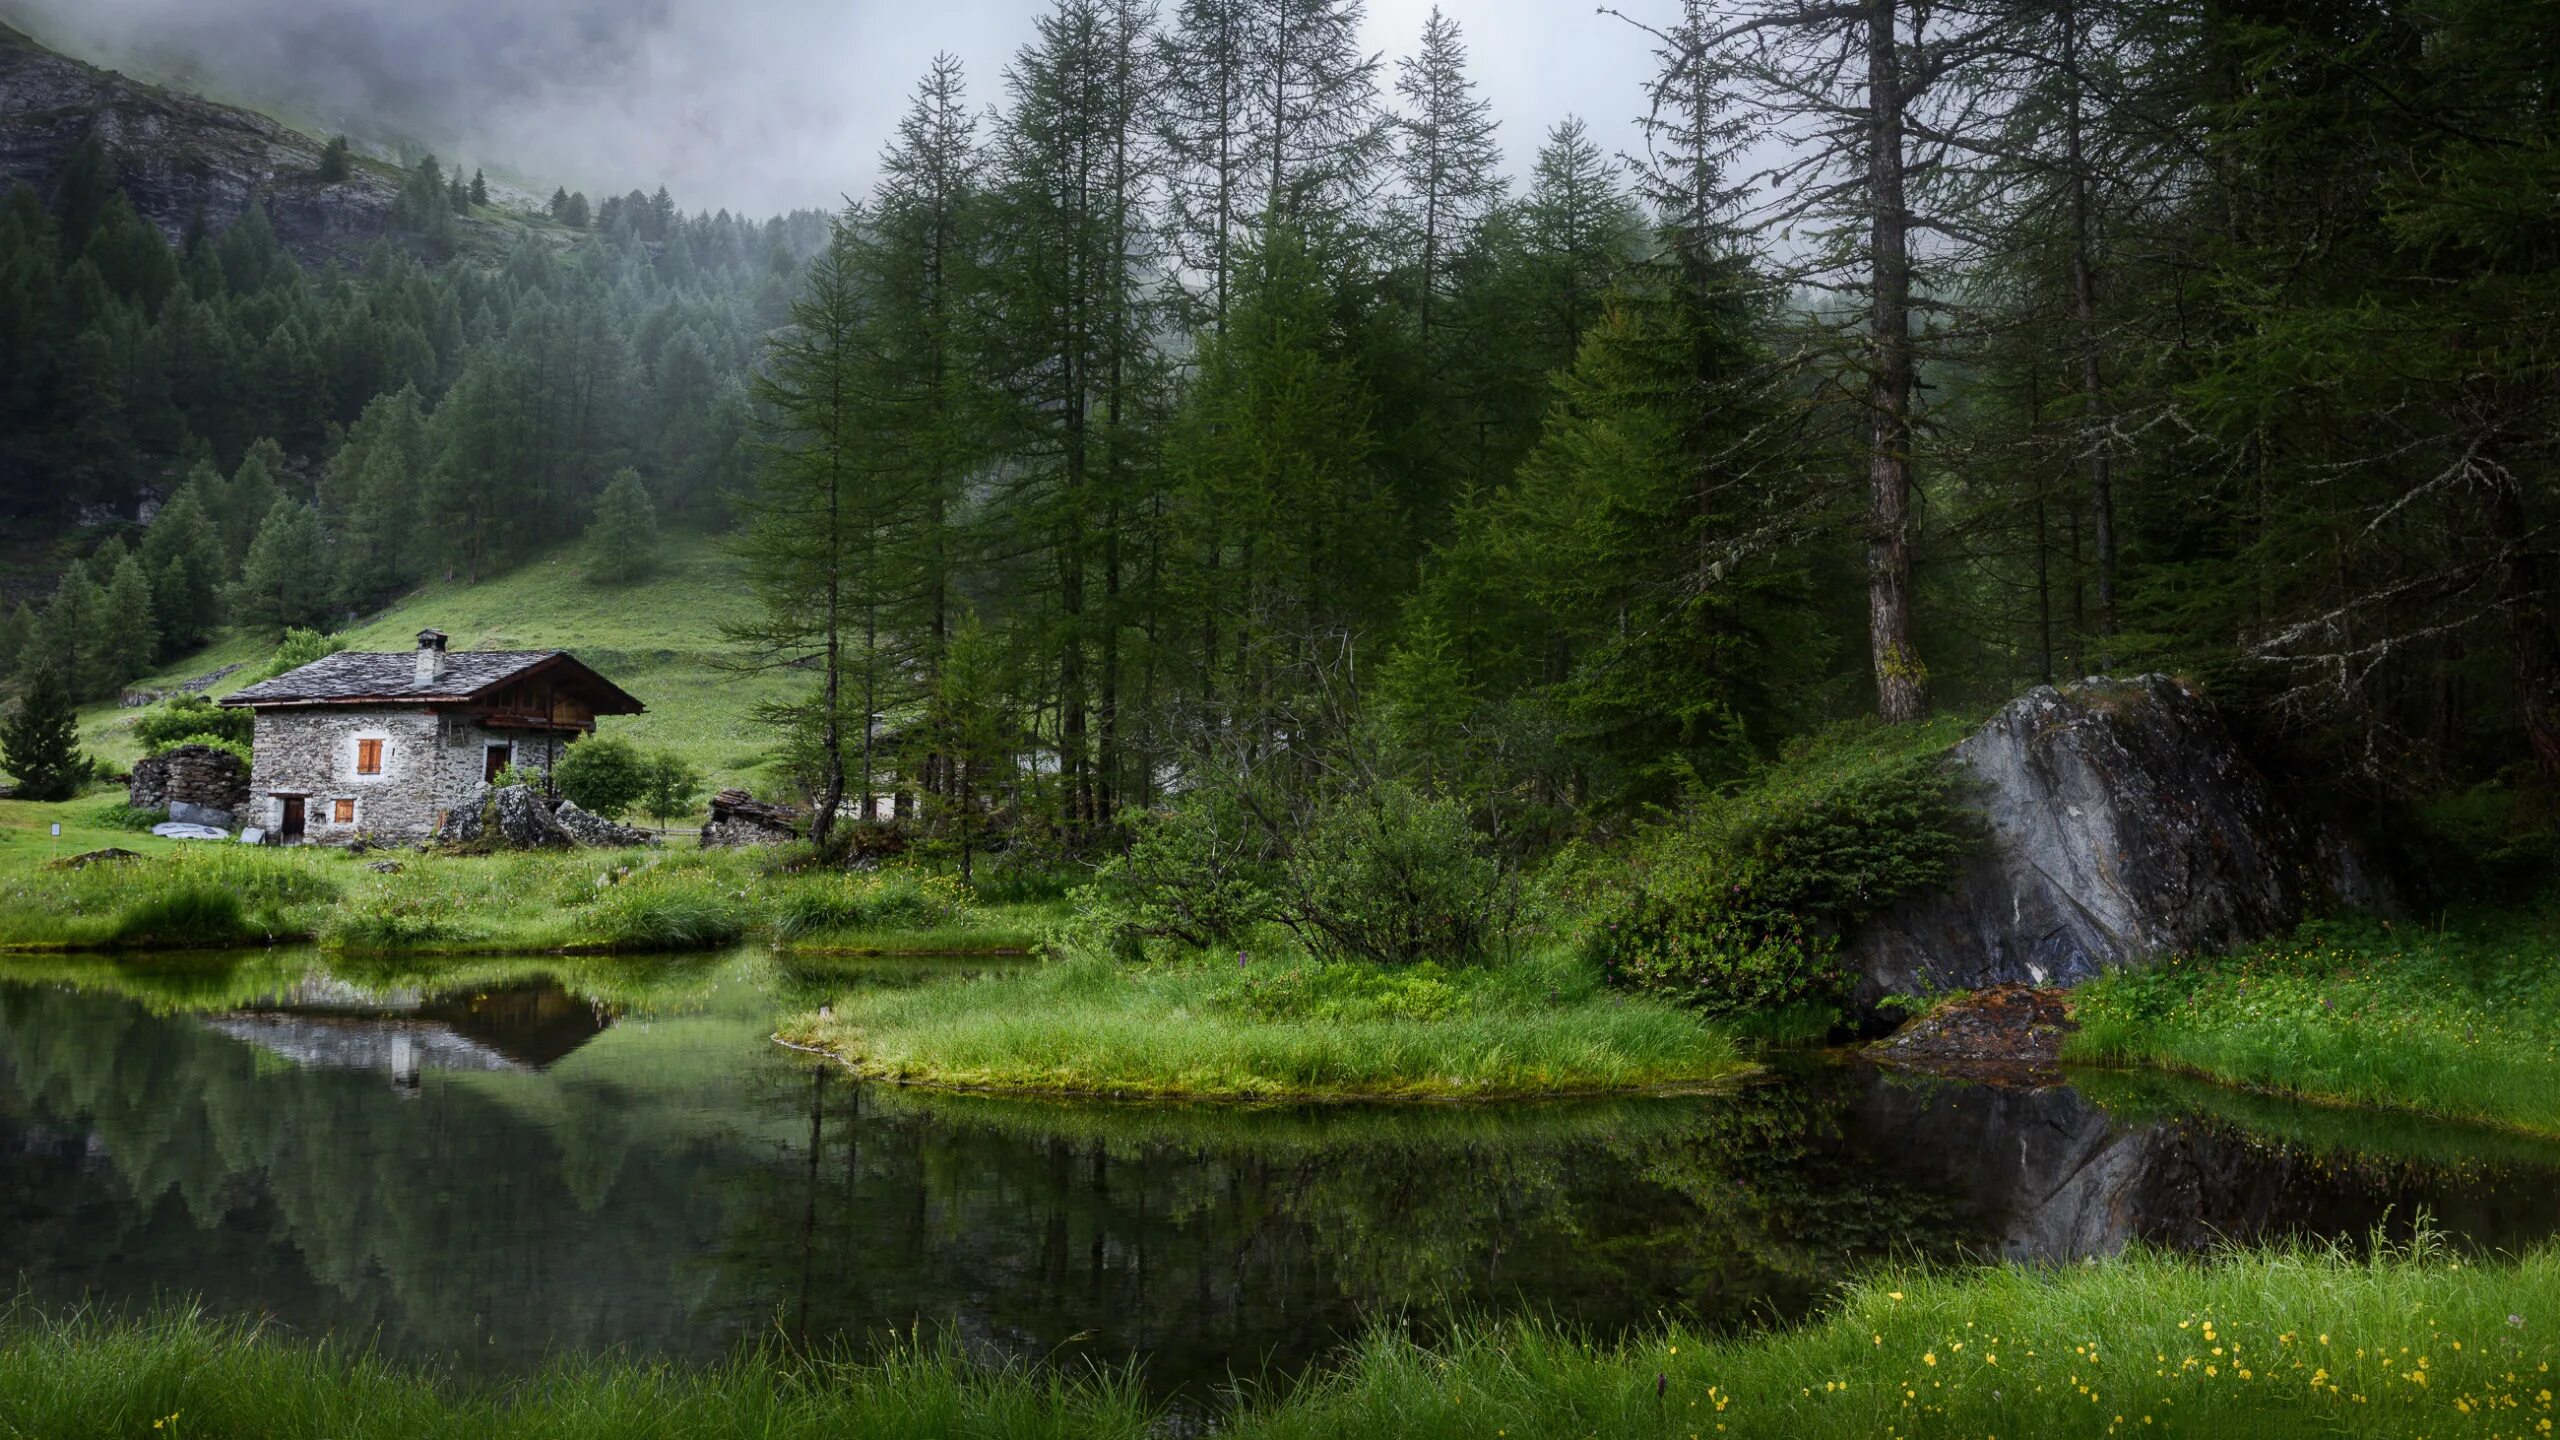 Хижина штата Мэн. Шварцвальд дом в лесу. Одинокий дом в лесу у озера. Одинокий домик в лесу. Дом дикой природы